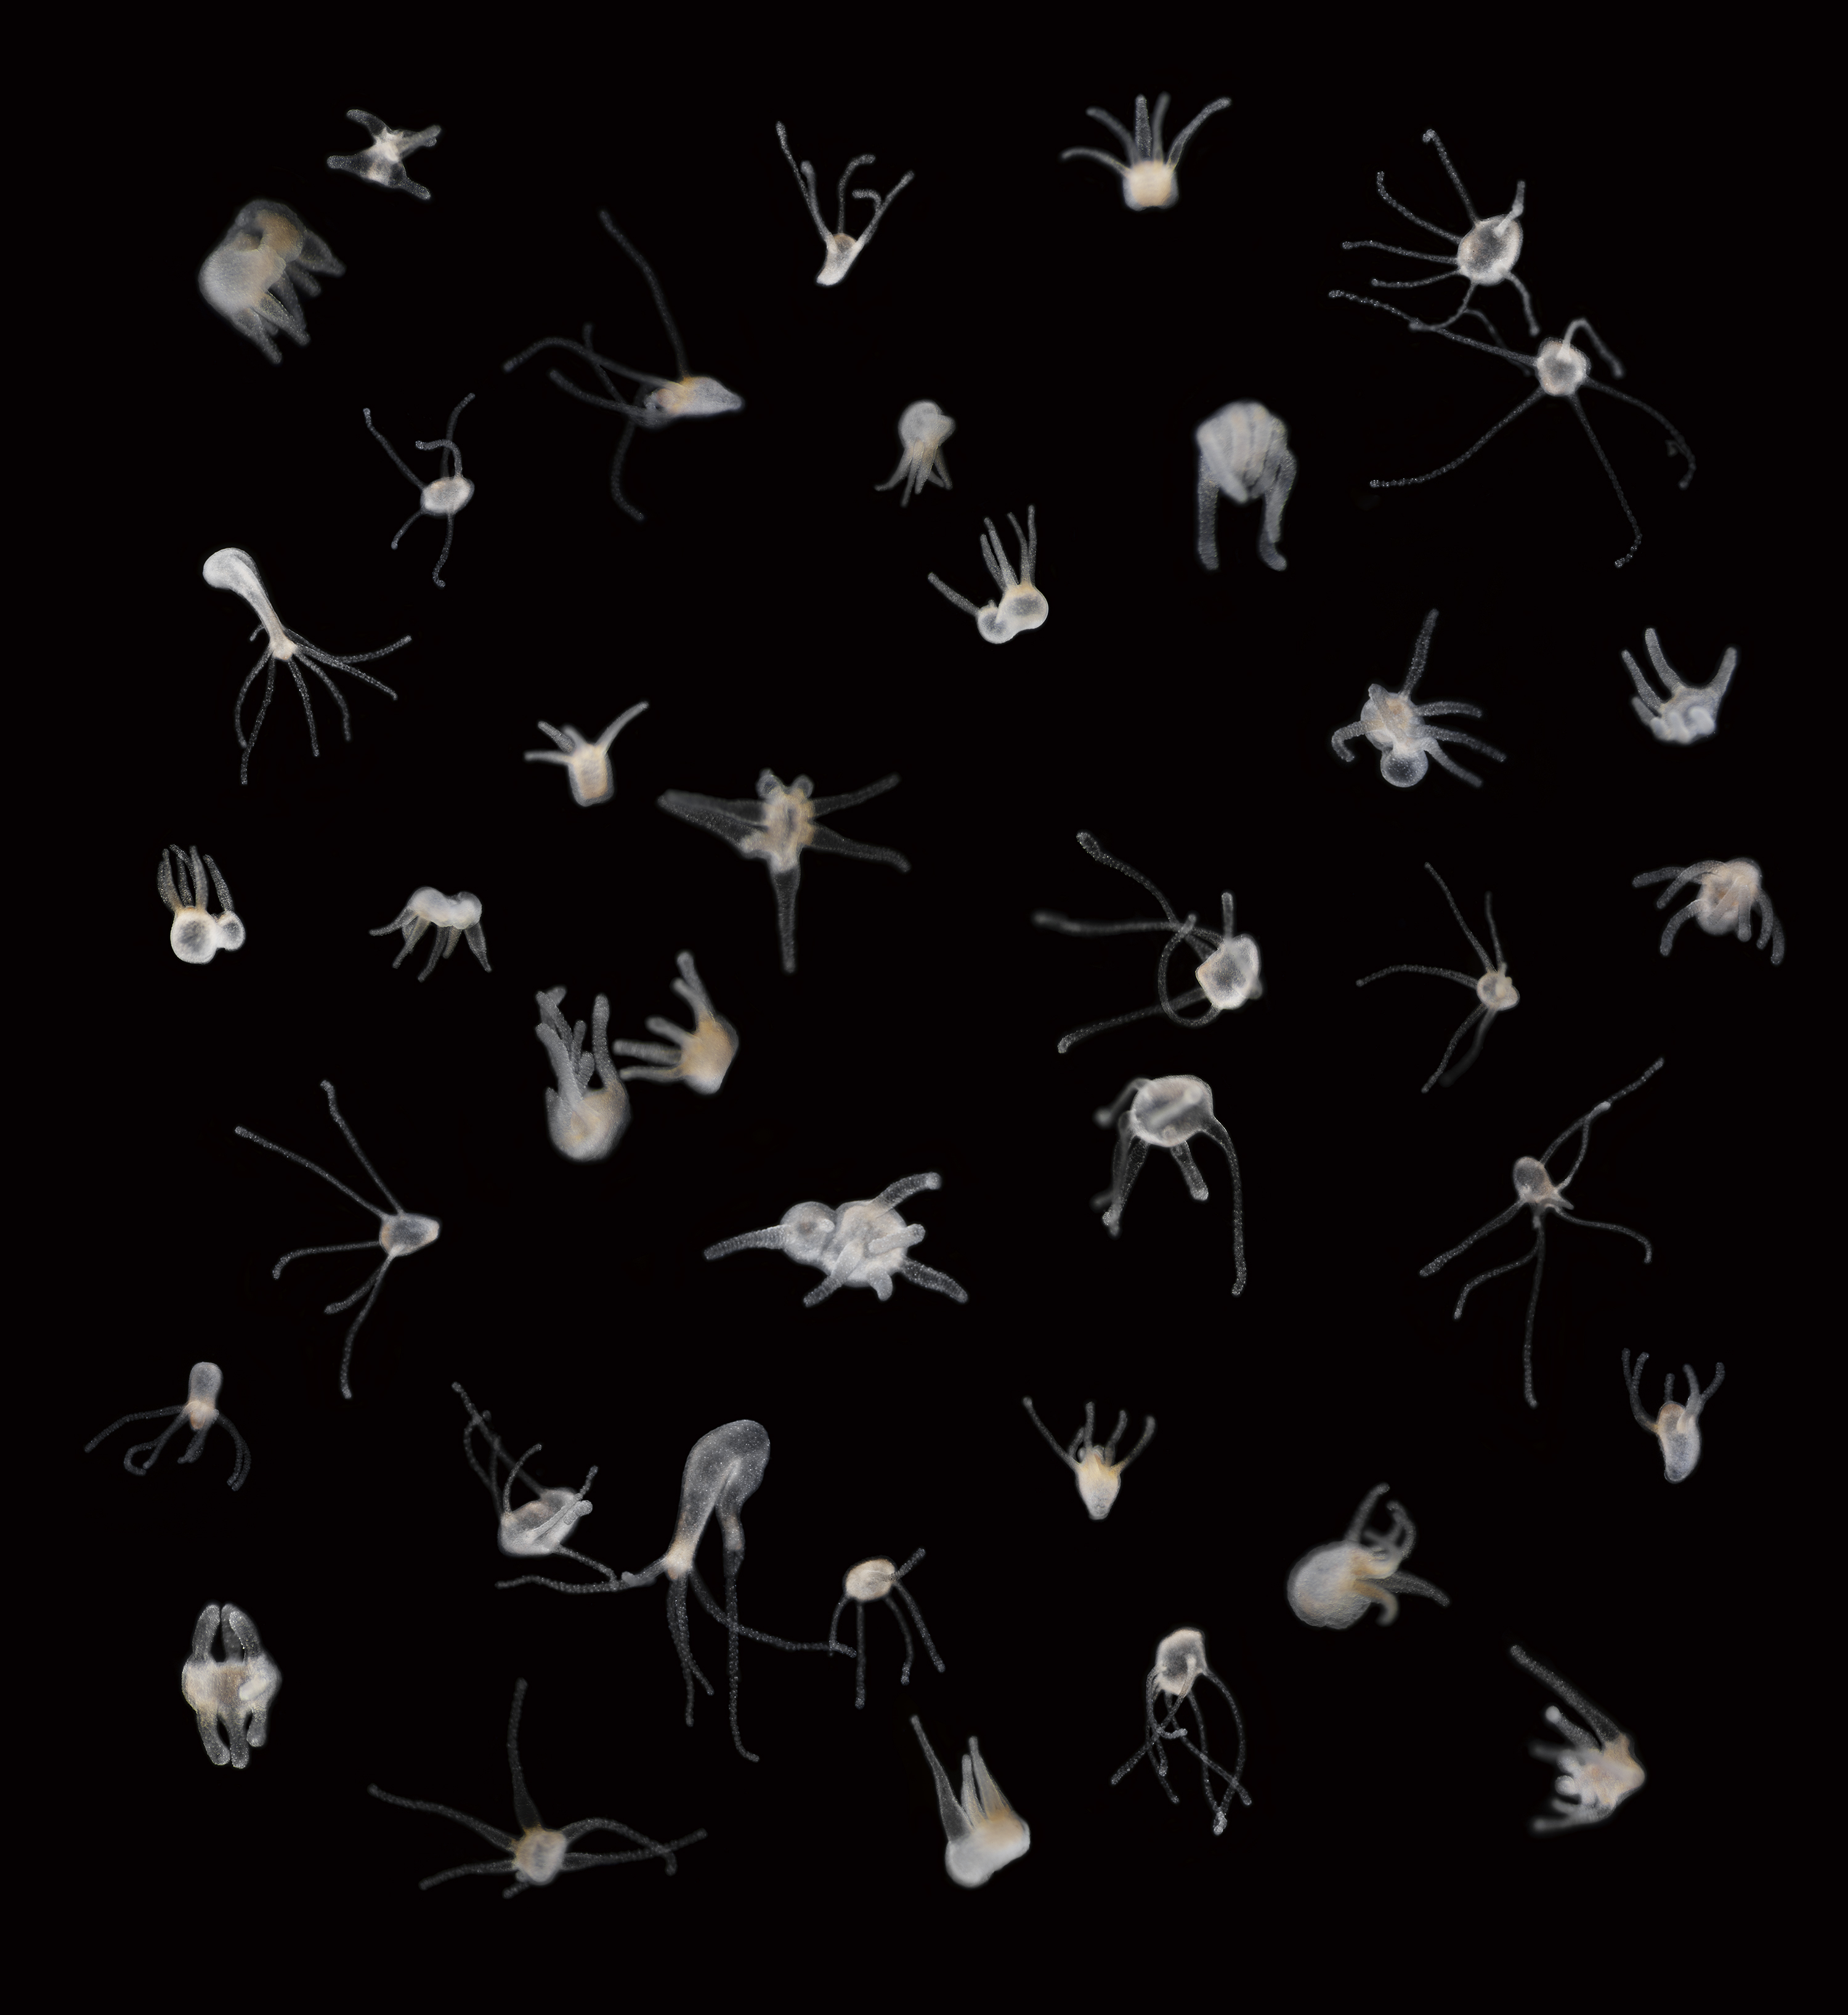 Pieniä monijalkaisia läpikuultavia eliöitä mustaa taustaa vasten.